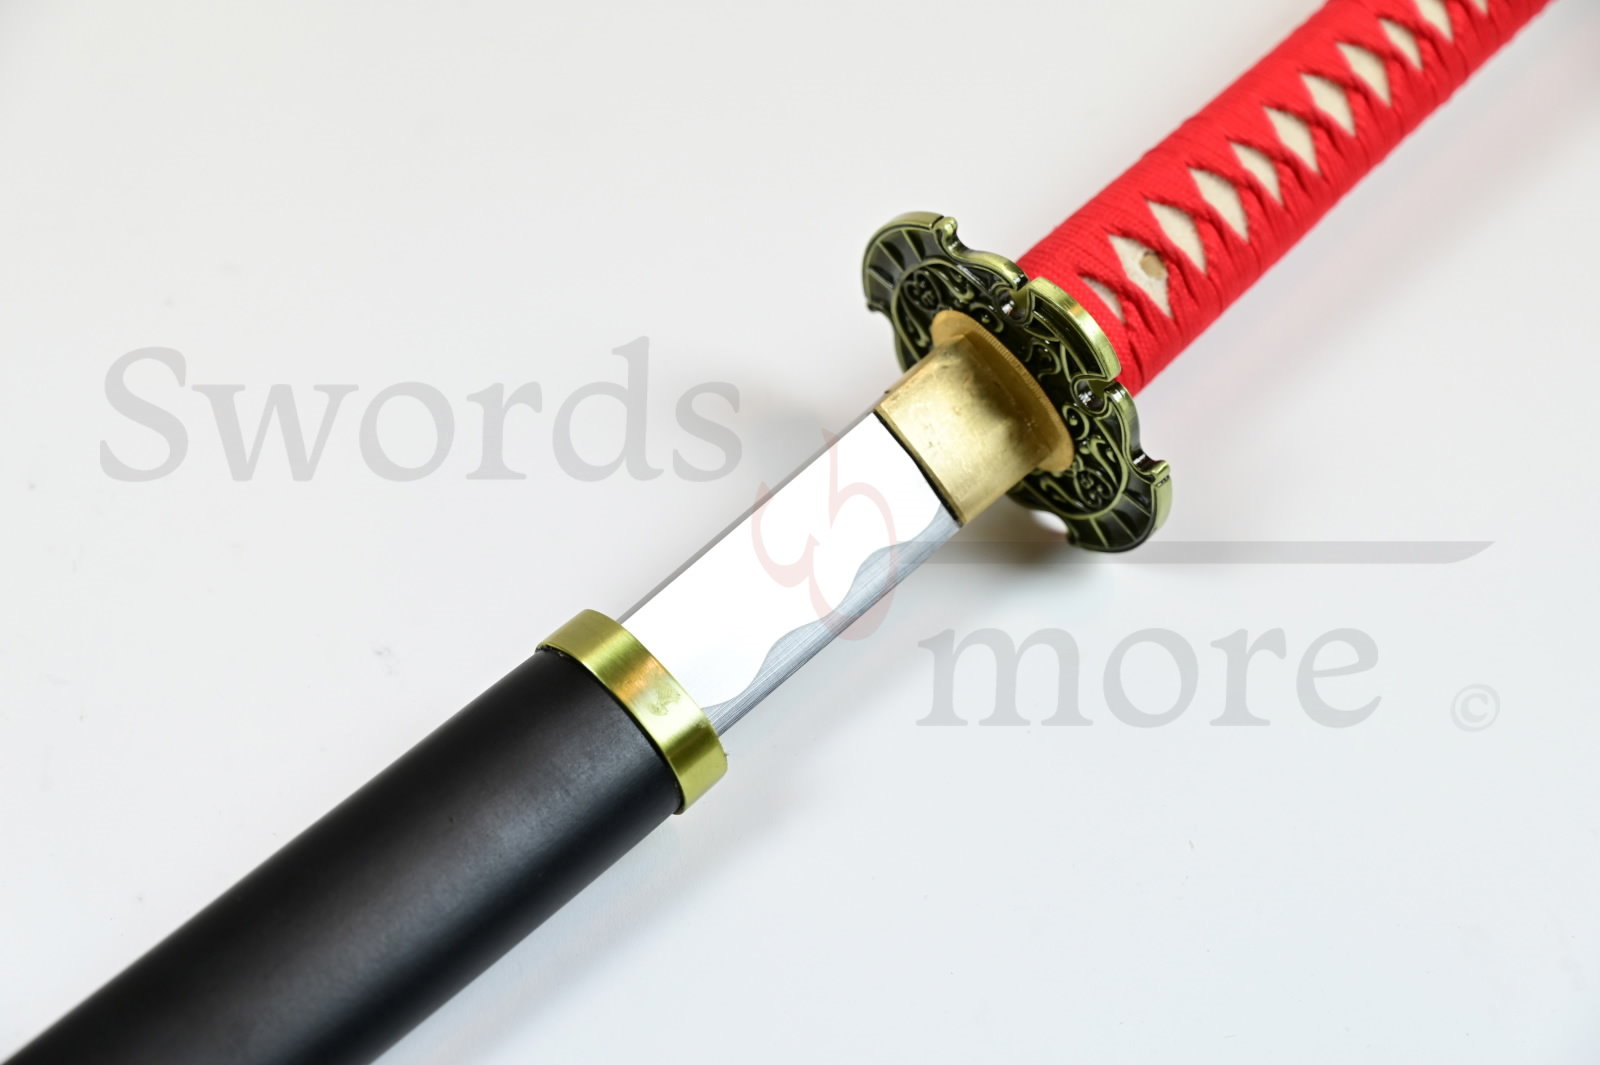 Schwert von Ryu Hayabusa - handgeschmiedet